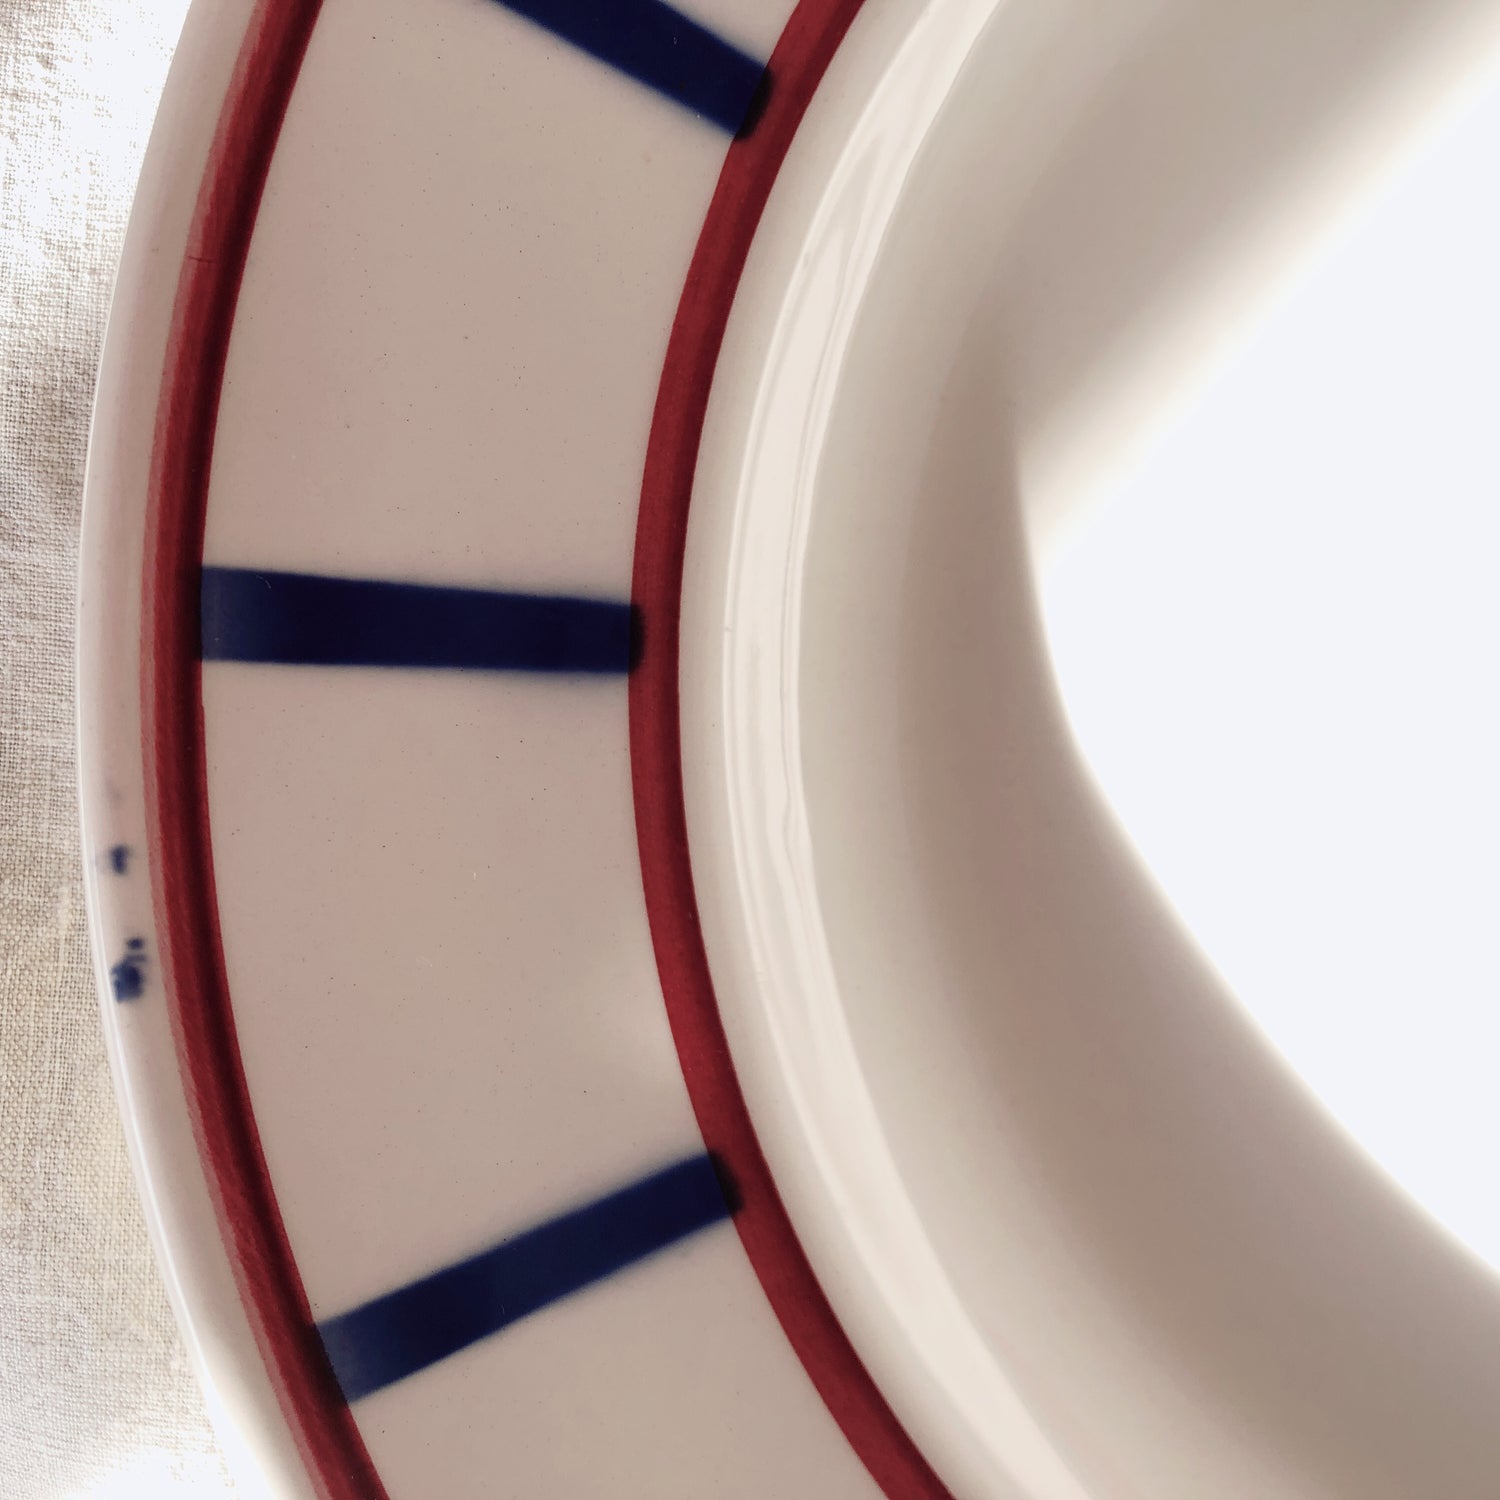 ディゴワンサルグミンヌ バスク柄プレート 大皿 30.8cm『ルージュ・マリン』フランスアンティーク食器 フランス蚤の市・ブロカント バスク柄食器